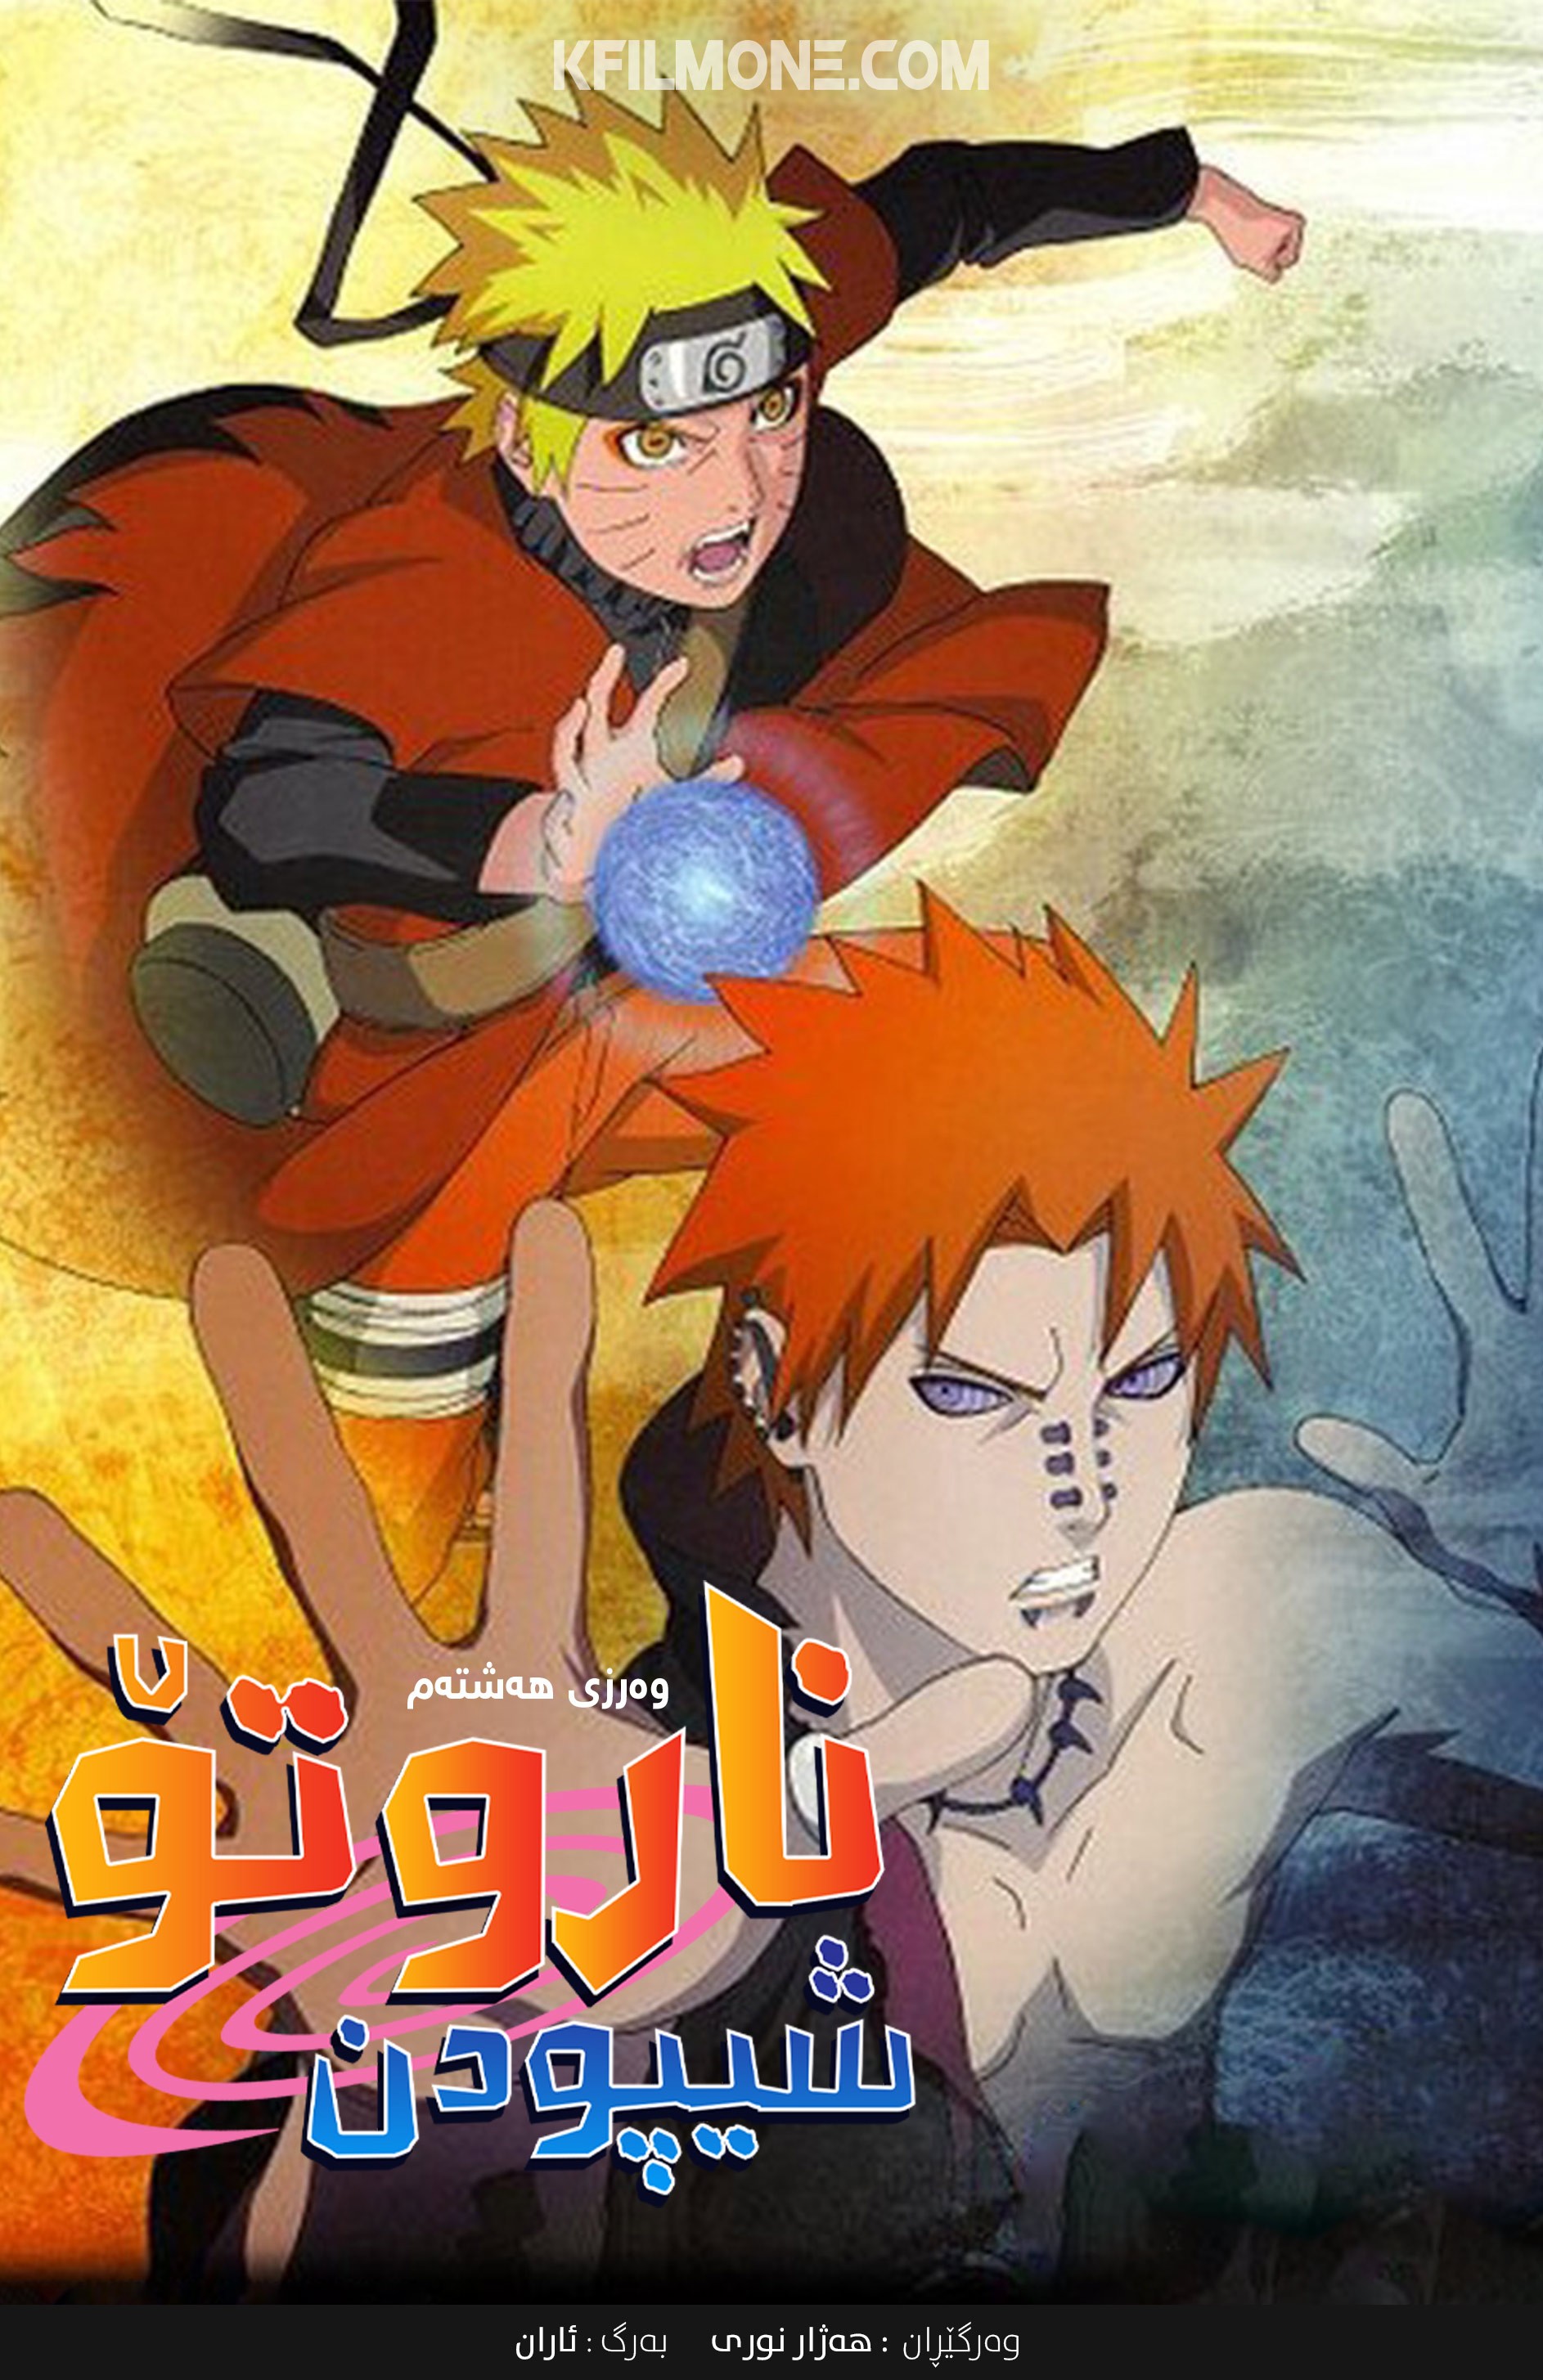 Naruto: Shippuden S08